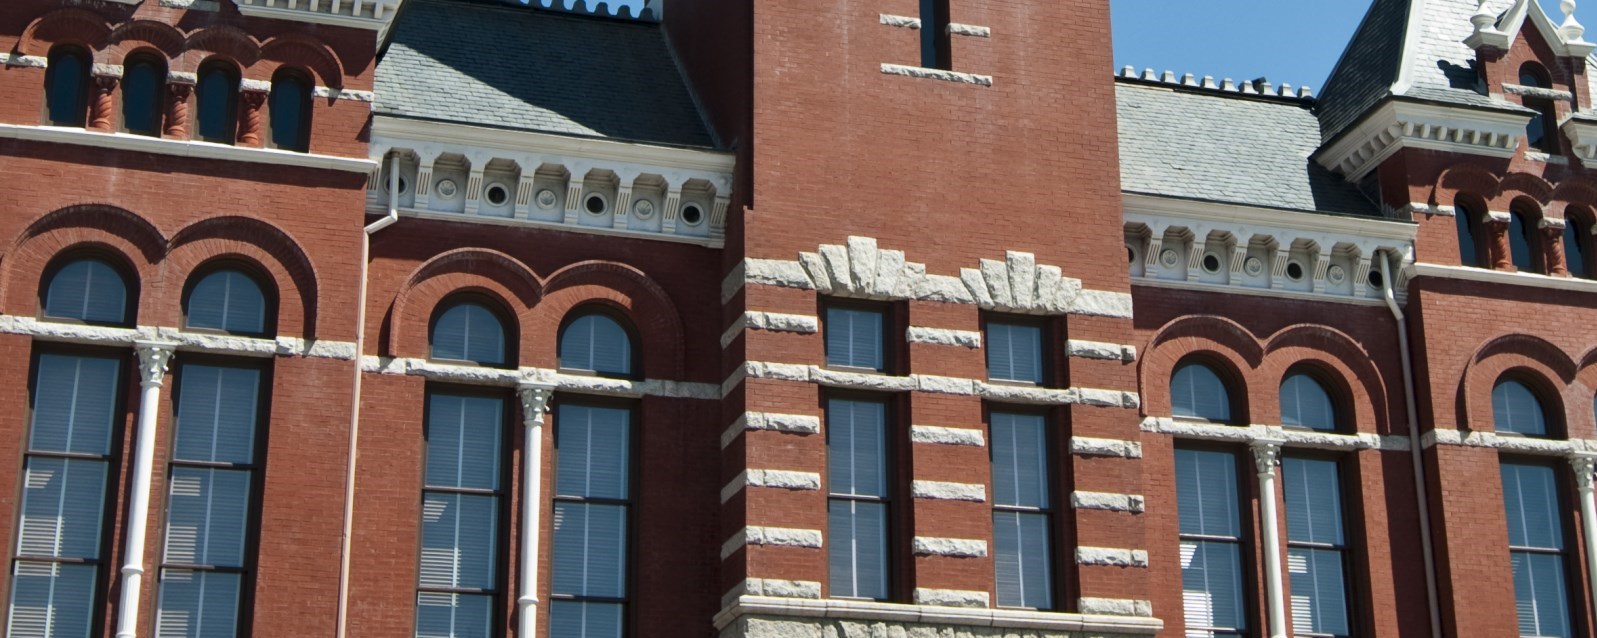 County courthouse facade